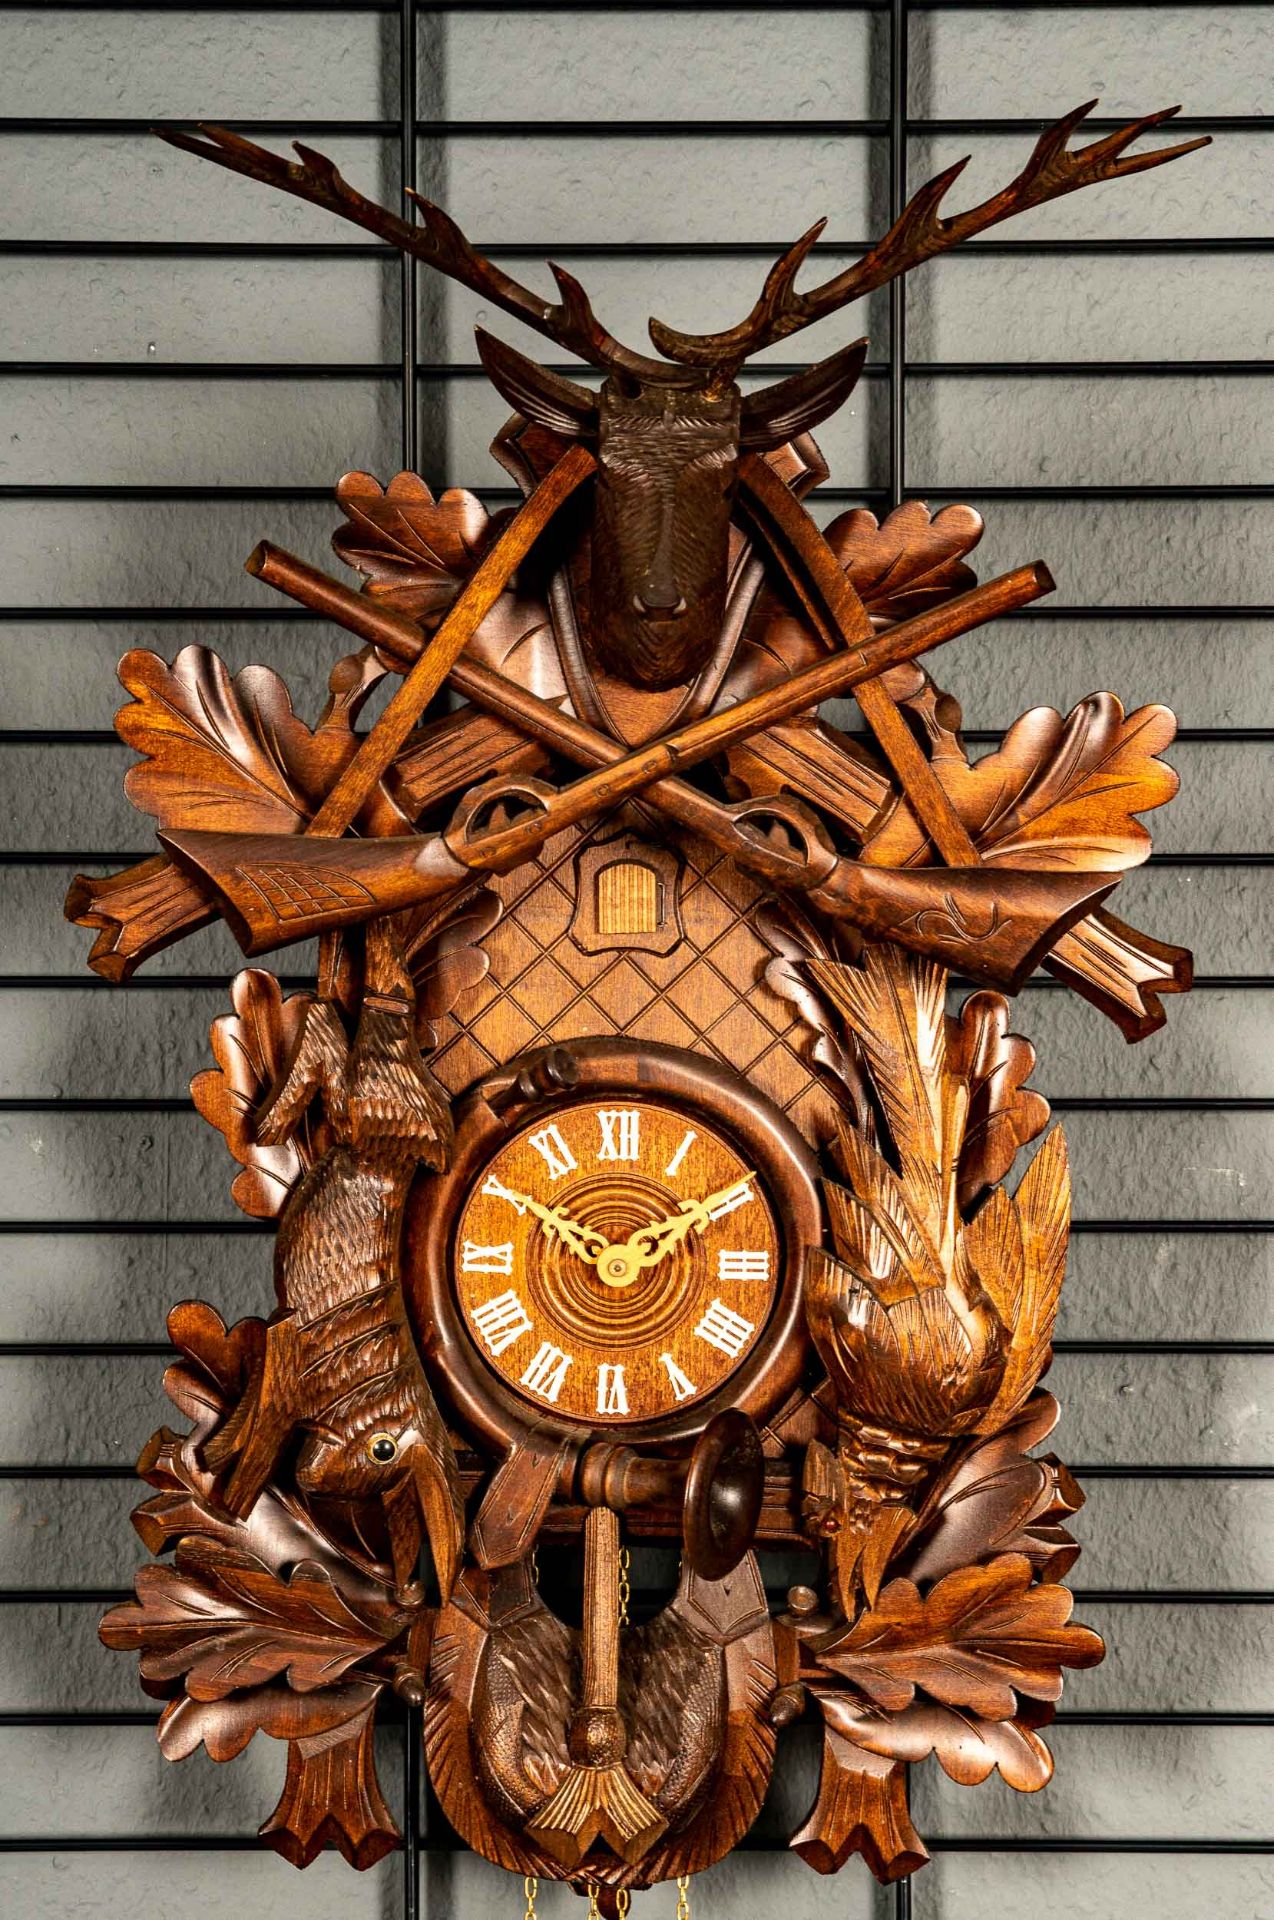 Imposante "Kuckucks"-Uhr, 2. Hälfte 20. Jhdt., aufwändig beschnitztes, nussbaumfarbiges Holzgehäuse - Bild 2 aus 15